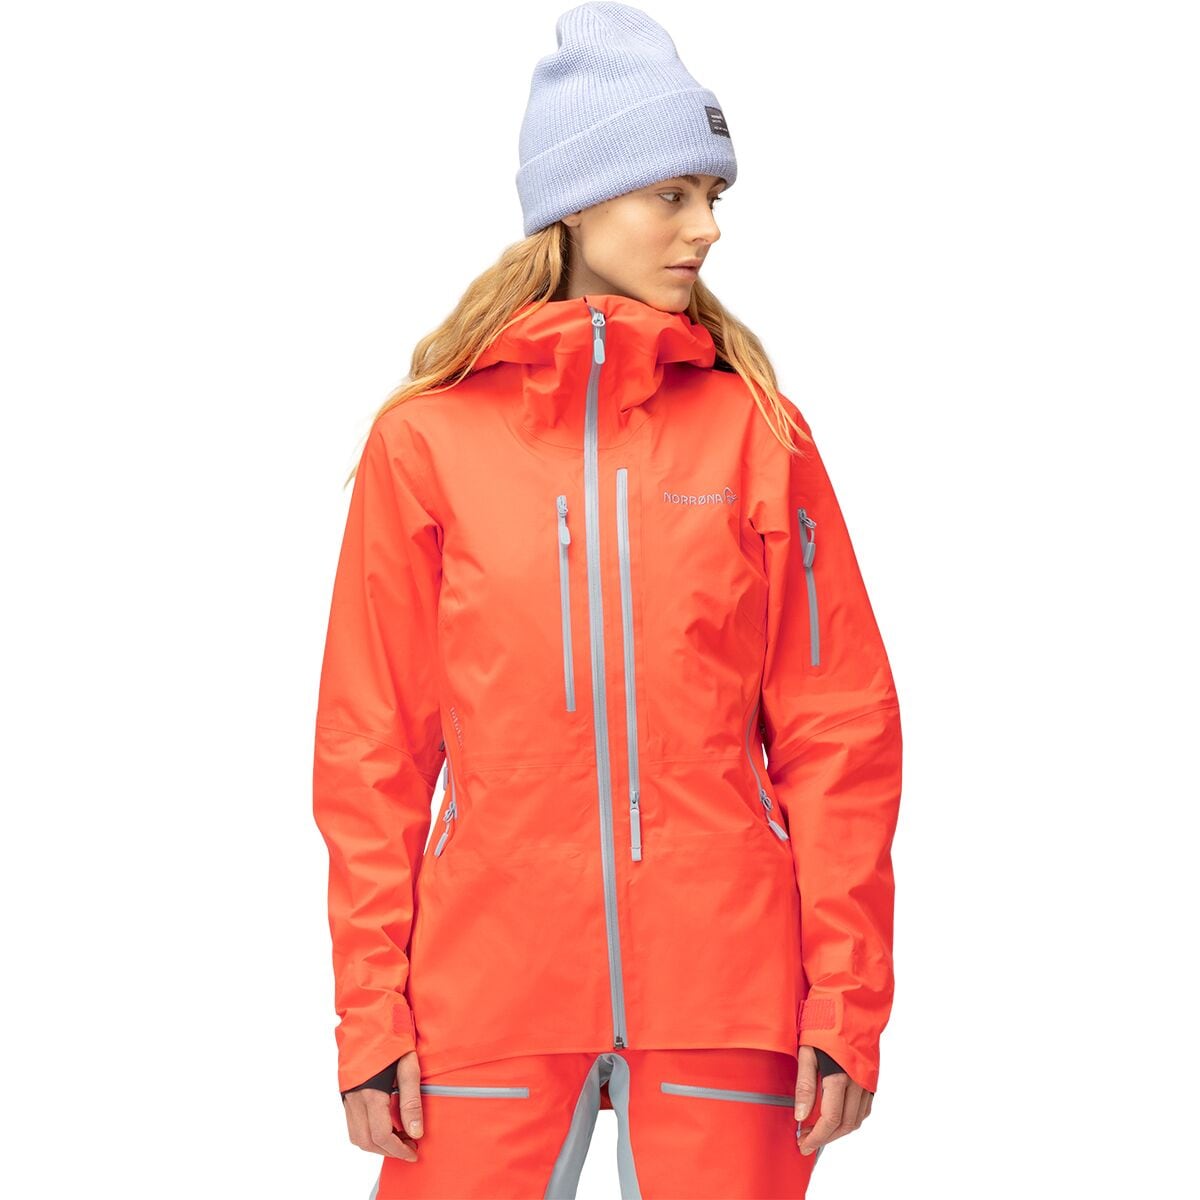 Norrona Lofoten GORE-TEX PRO Jacket - Women's Orange Alert2